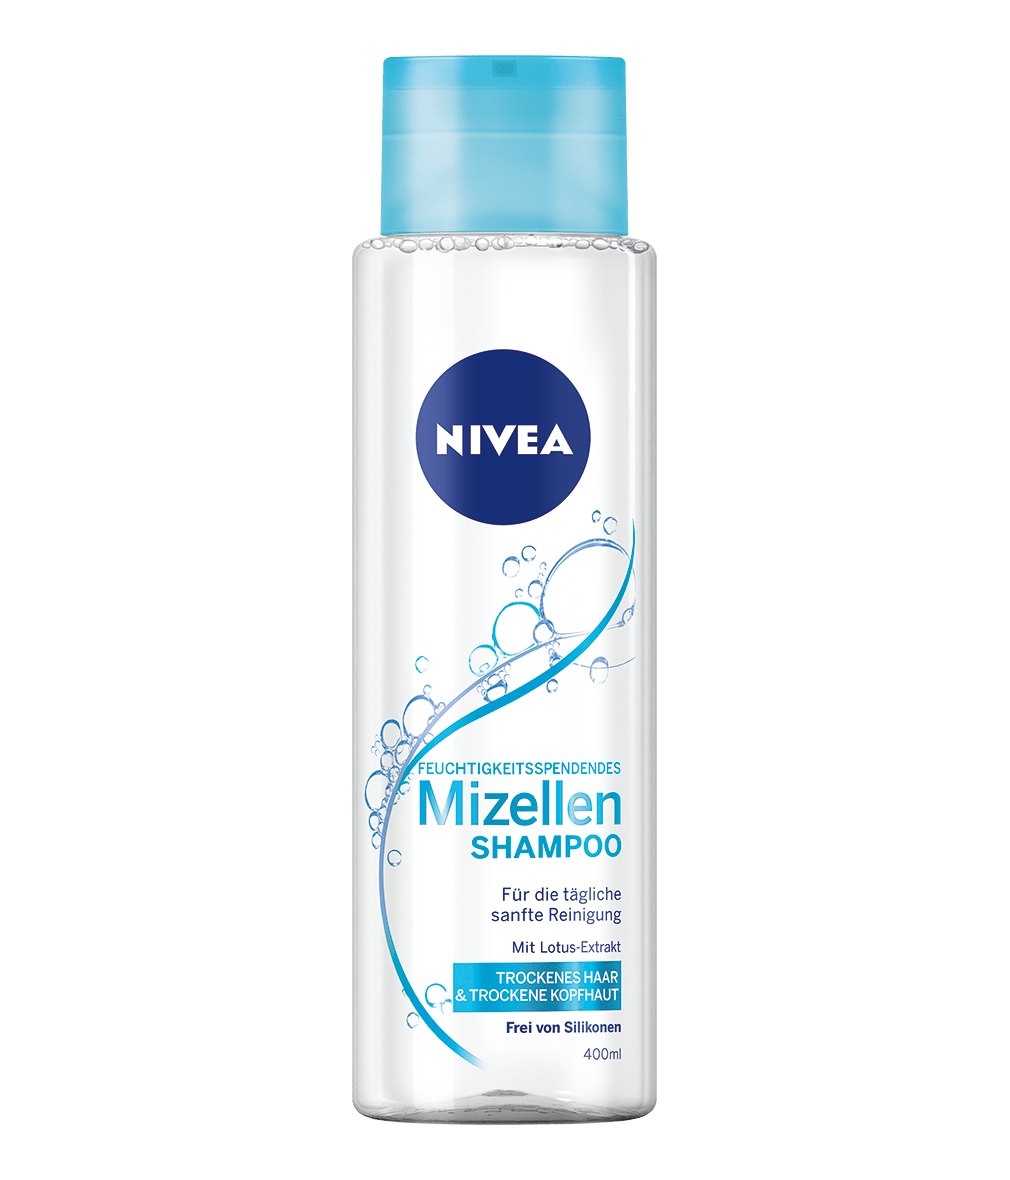 Feuchtigkeitsspendendes Shampoo Nivea Mizellen Shampoo